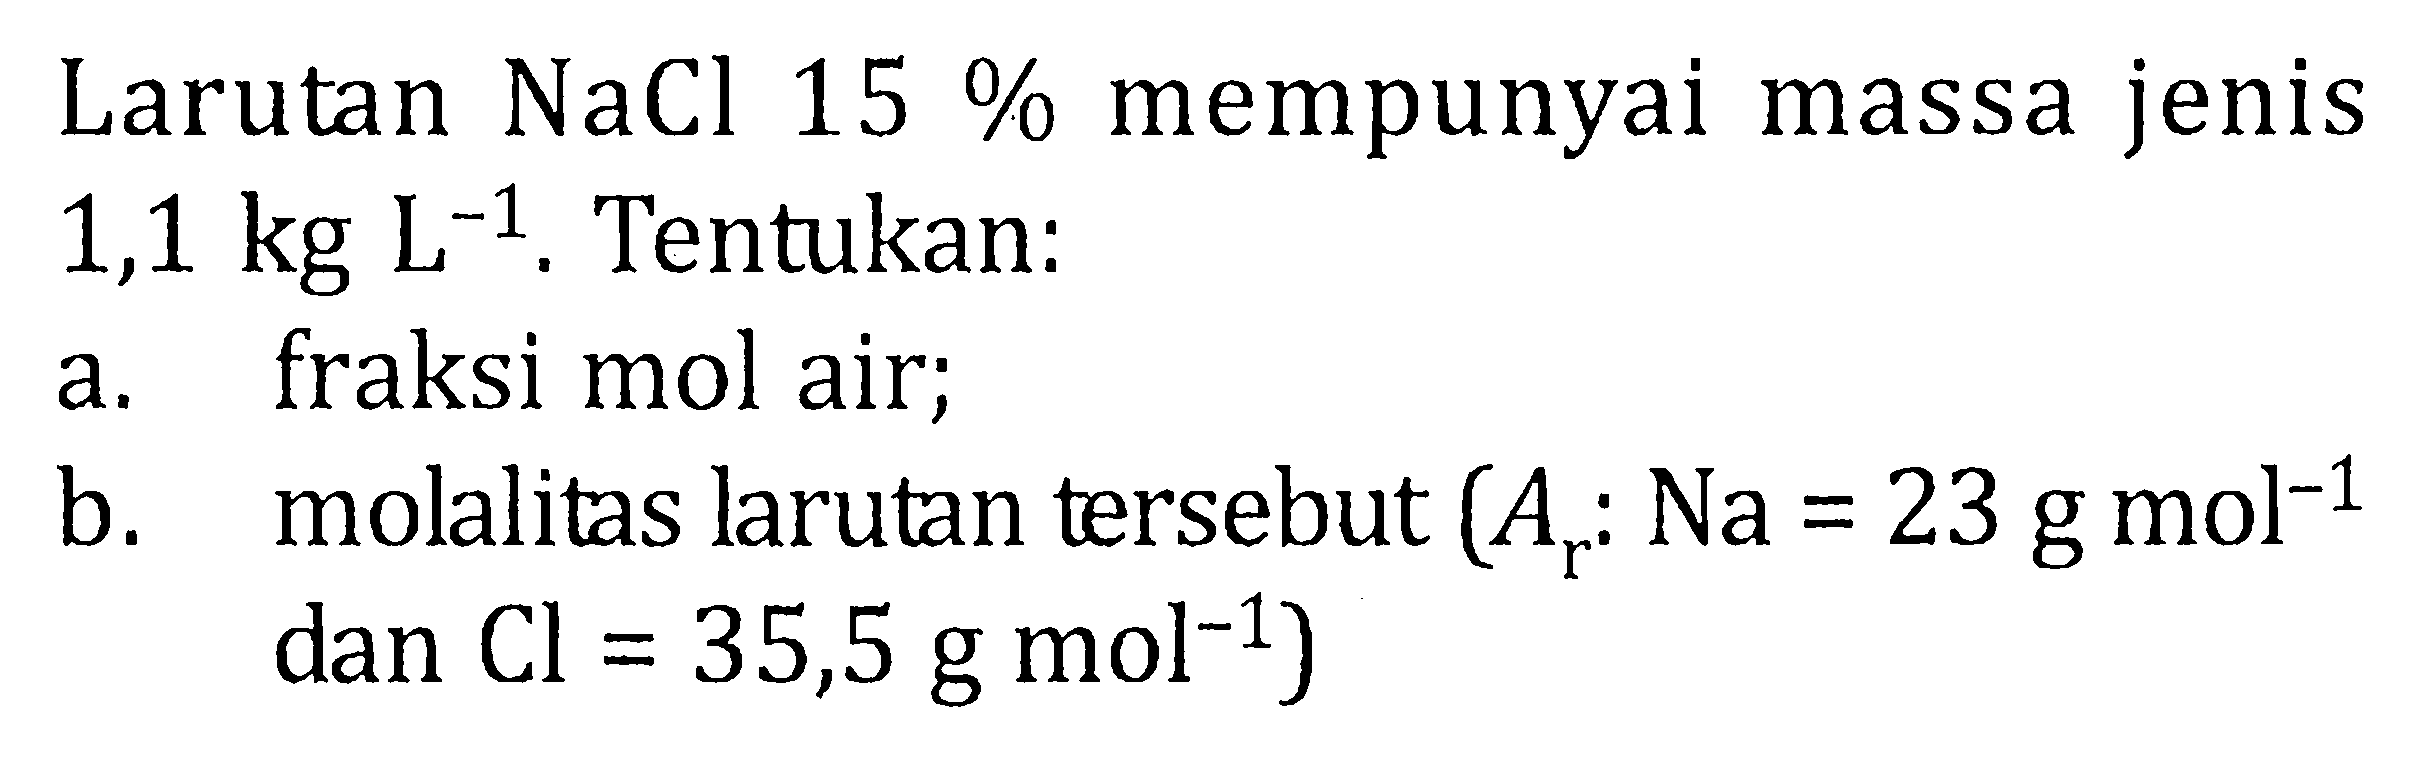 Larutan NaCl 15% mempunyai massa jenis 1,1 kg L^-1. Tentukan : a. fraksi mol air; b. molalitas larutan tersebut (Ar : Na = 23 g mol^-1 dan Cl = 35,5 g mol^-1)